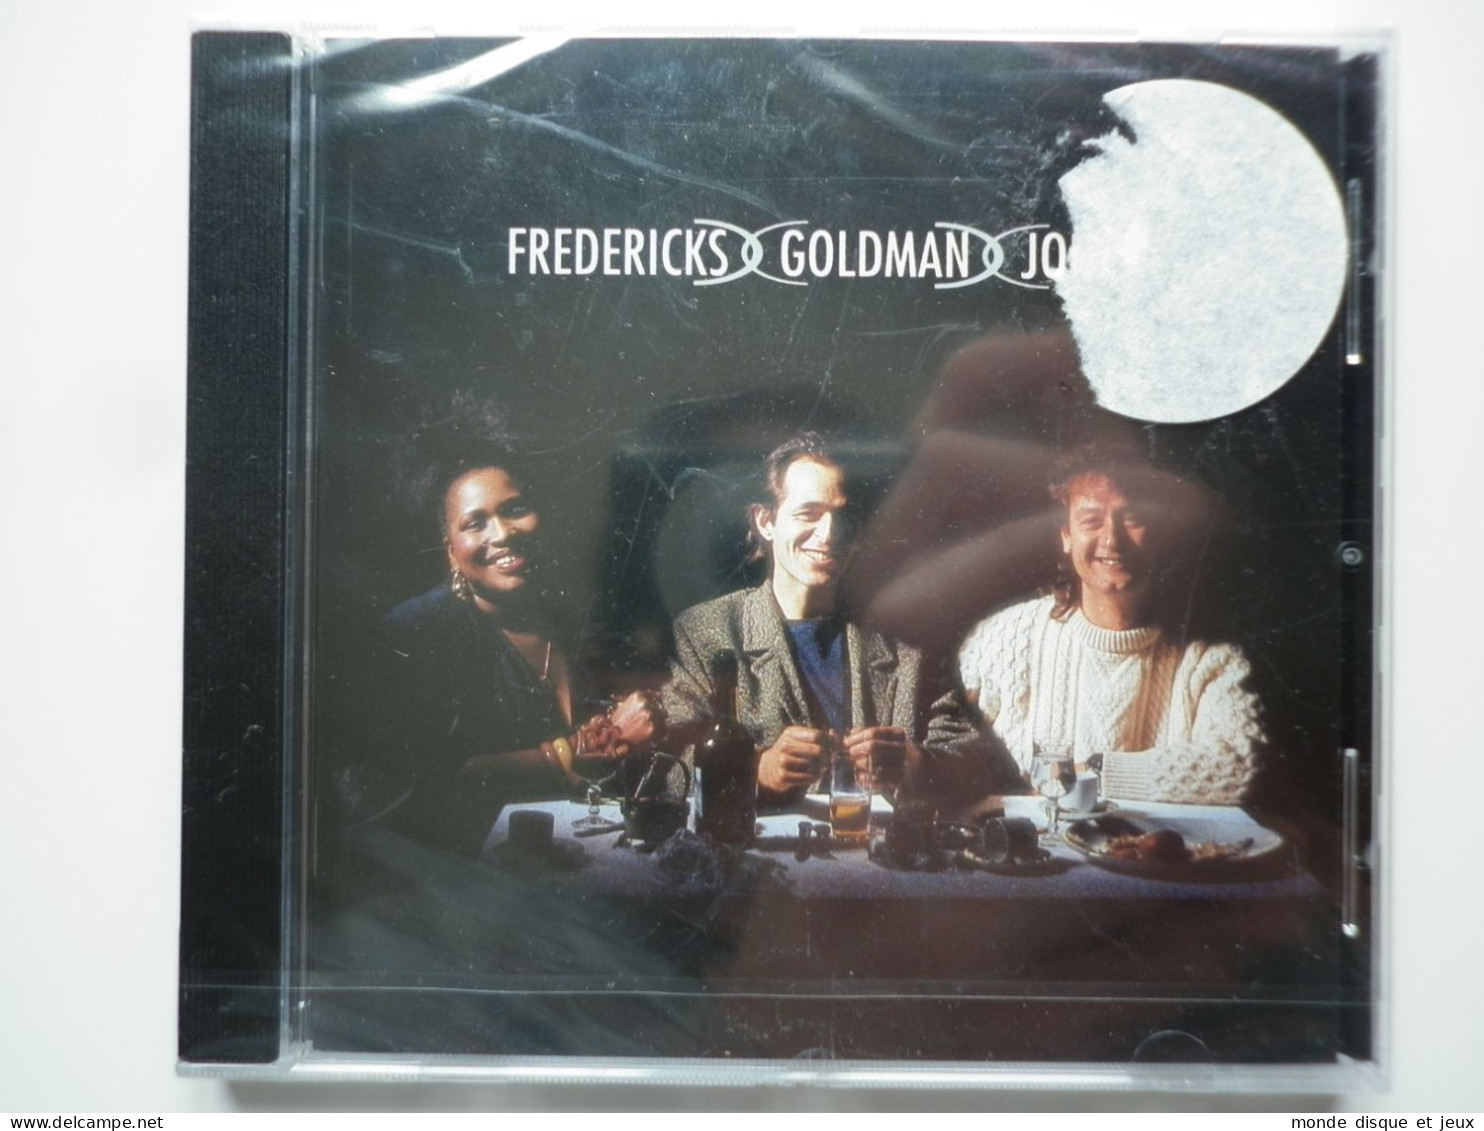 Fredericks Goldman Jones Cd Album Fredericks Goldman Jones - Other - French Music